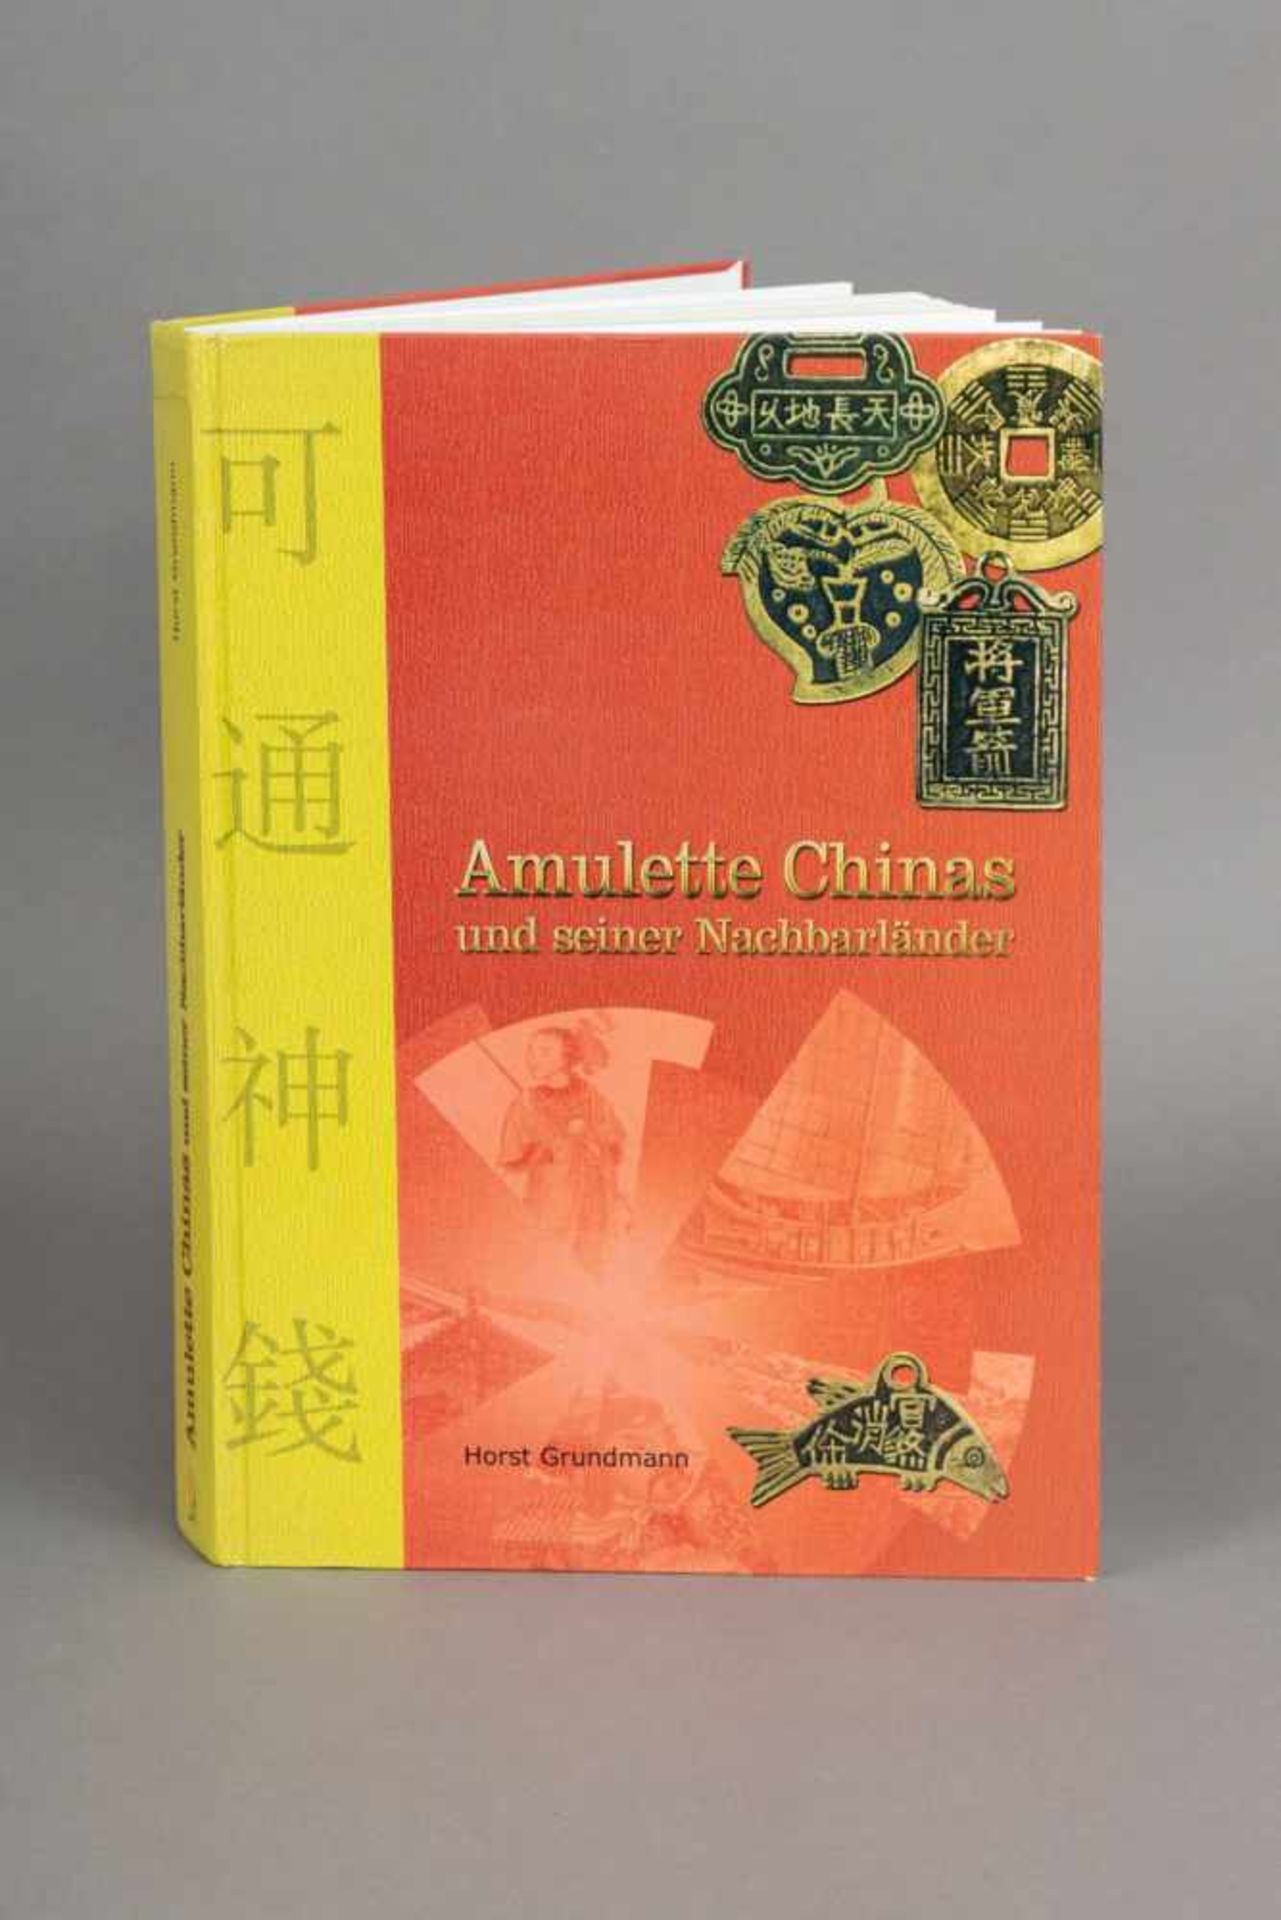 Buch ¨Amulette Chinas und seiner Nachbarländer¨Herausgeber Horst Grundmann, Reppa Verlag, 2003, sehr